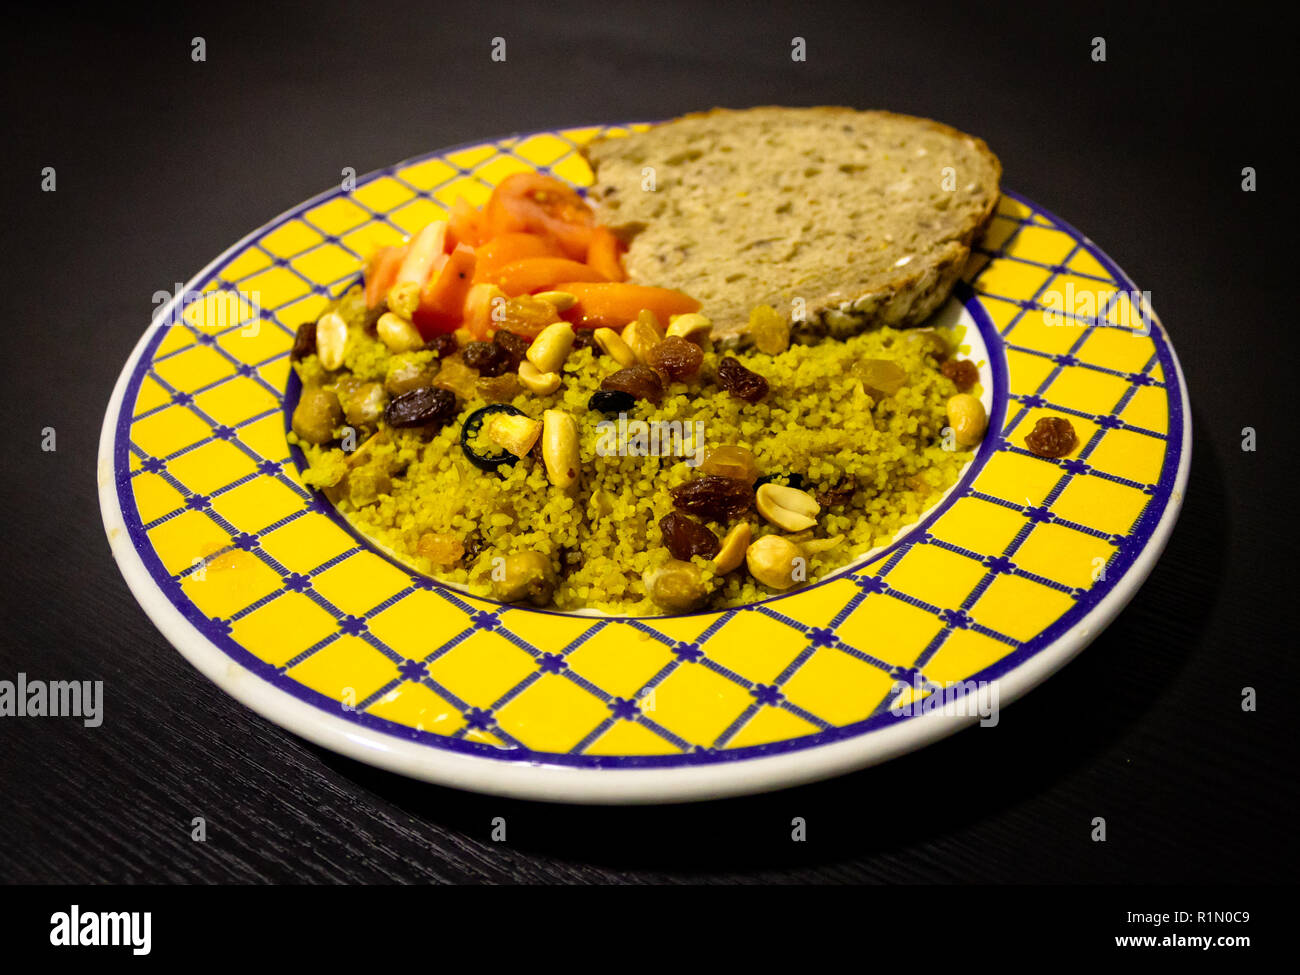 Futternapf auf schwarzem Holz- Hintergrund. Couscous, Tomaten, Erdnüsse, Rosinen, Brot. Gelb Blau Platte. Nahaufnahme. Stockfoto